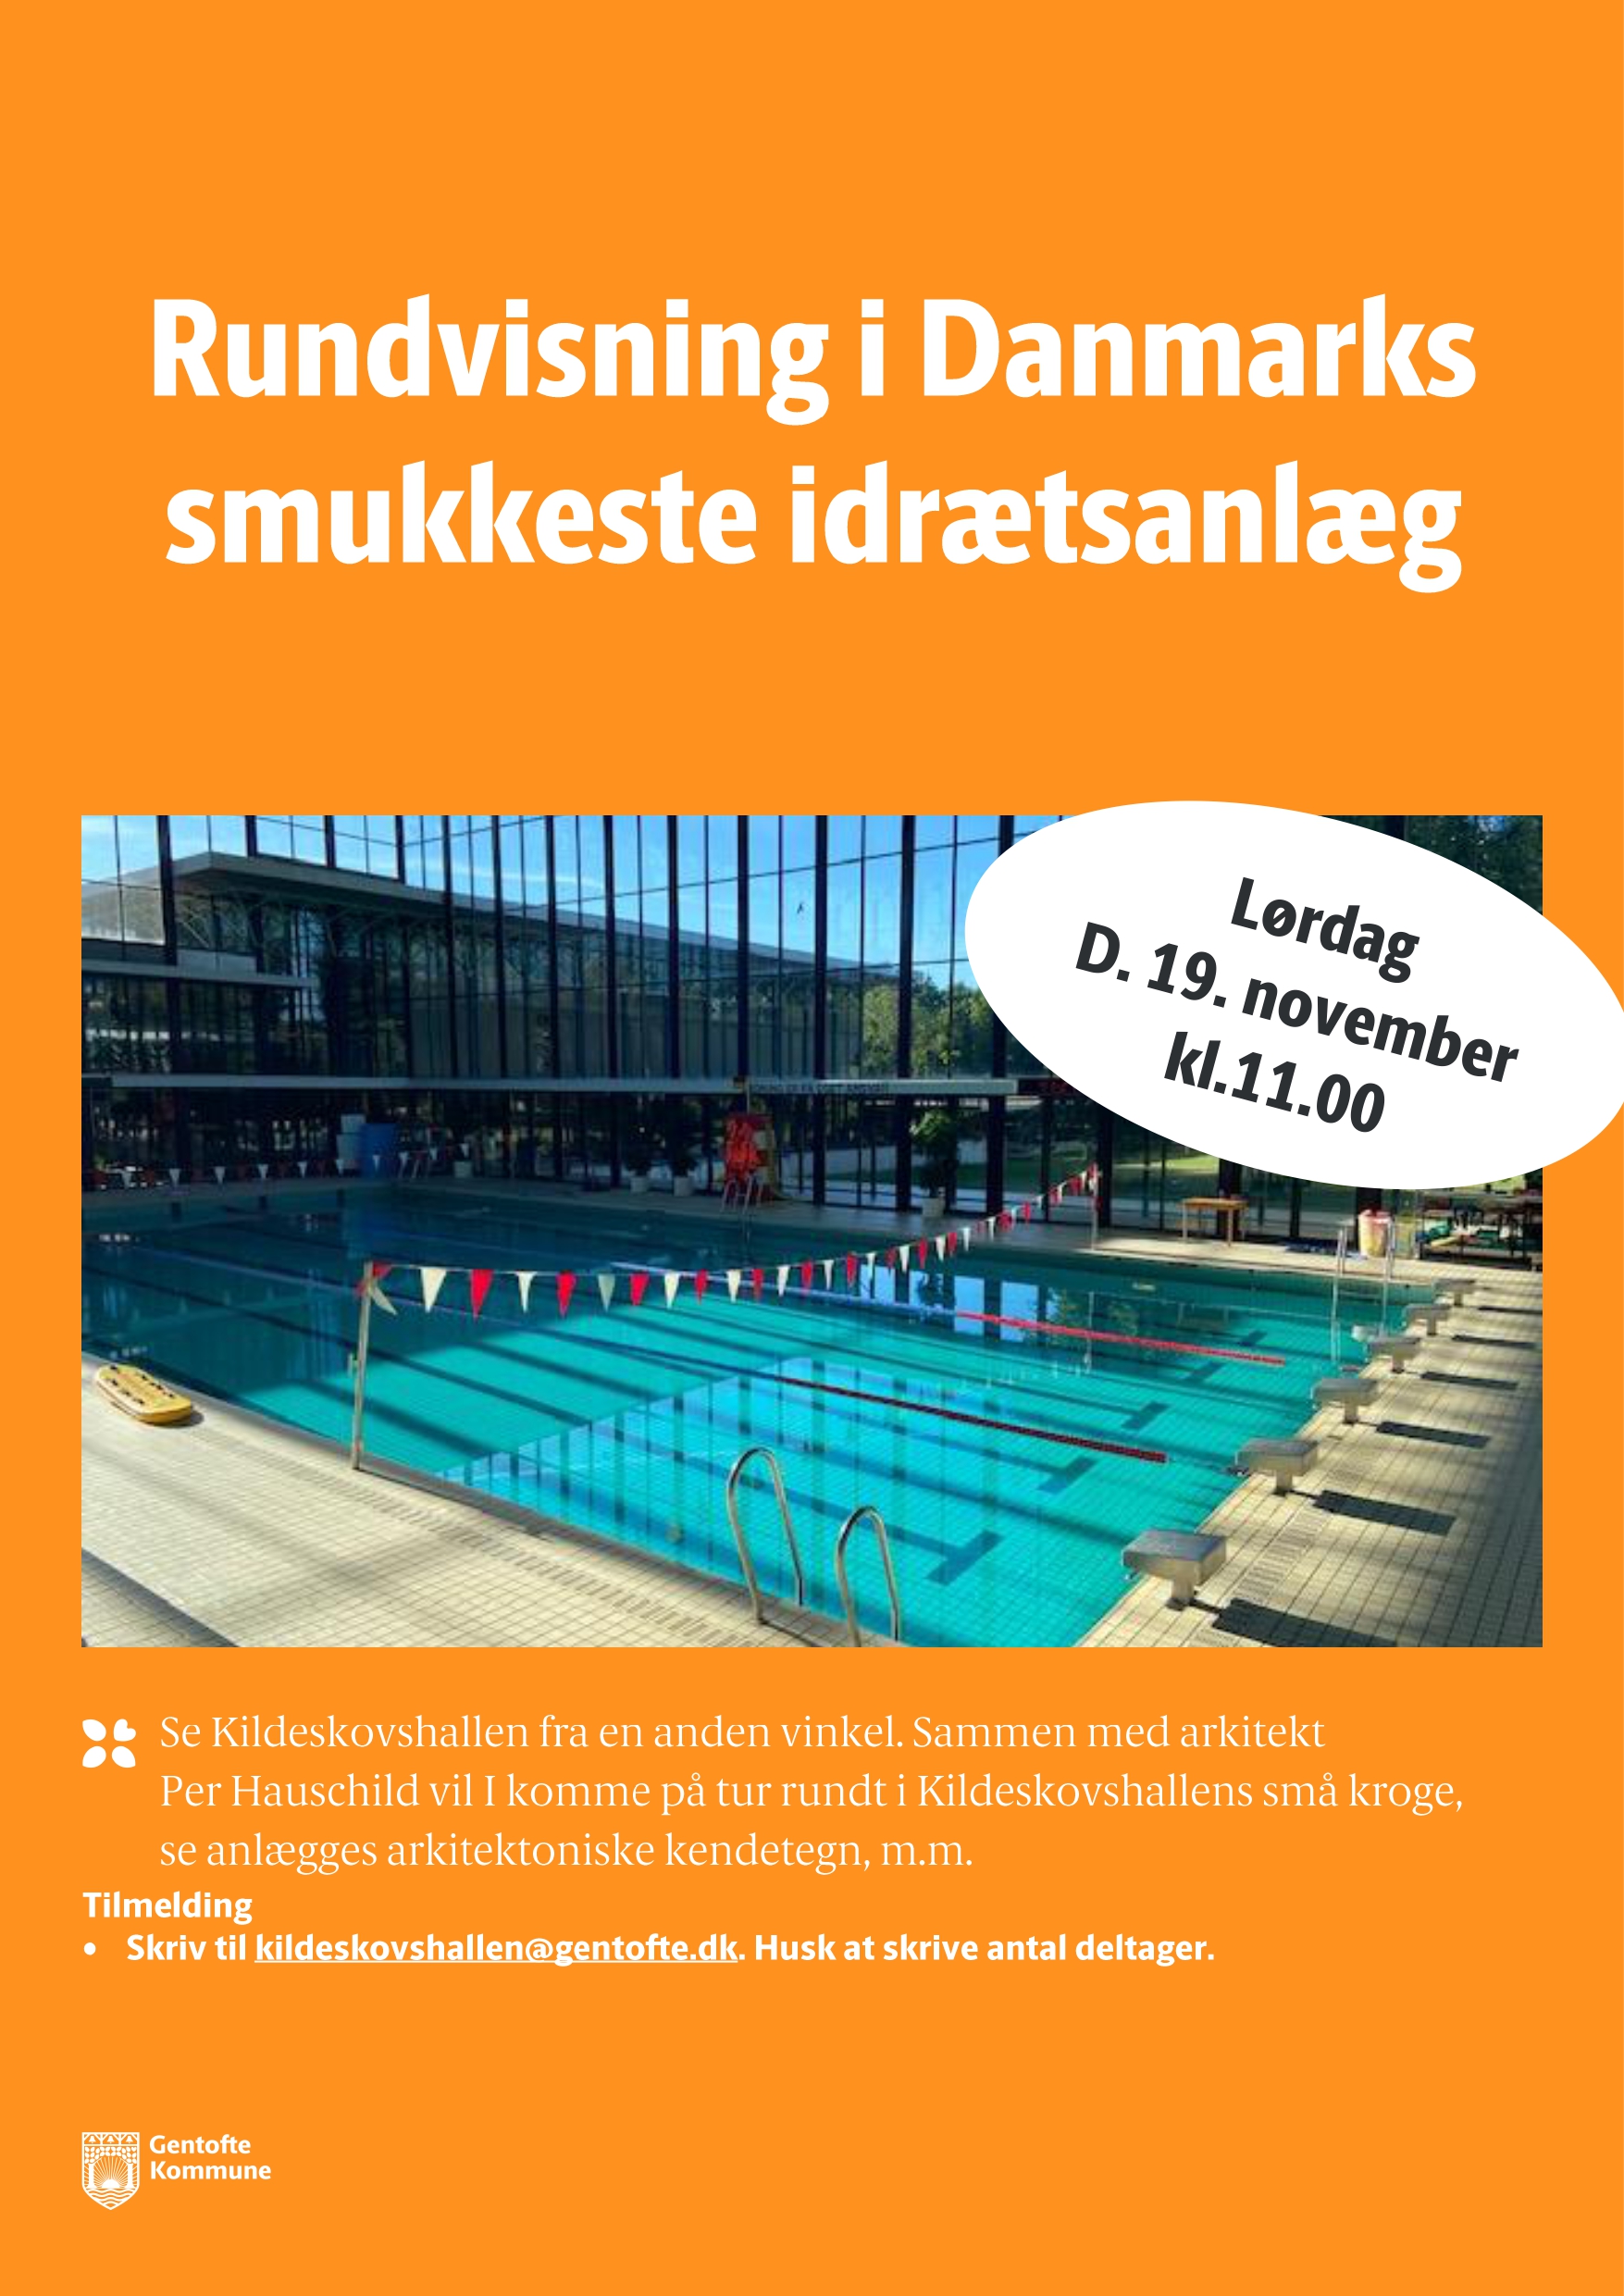 Orange plakat med overskrift Rundvisning i Danmarks smukkeste idrætsanlæg. Plakaten har et billede af svømmehallen udefra.